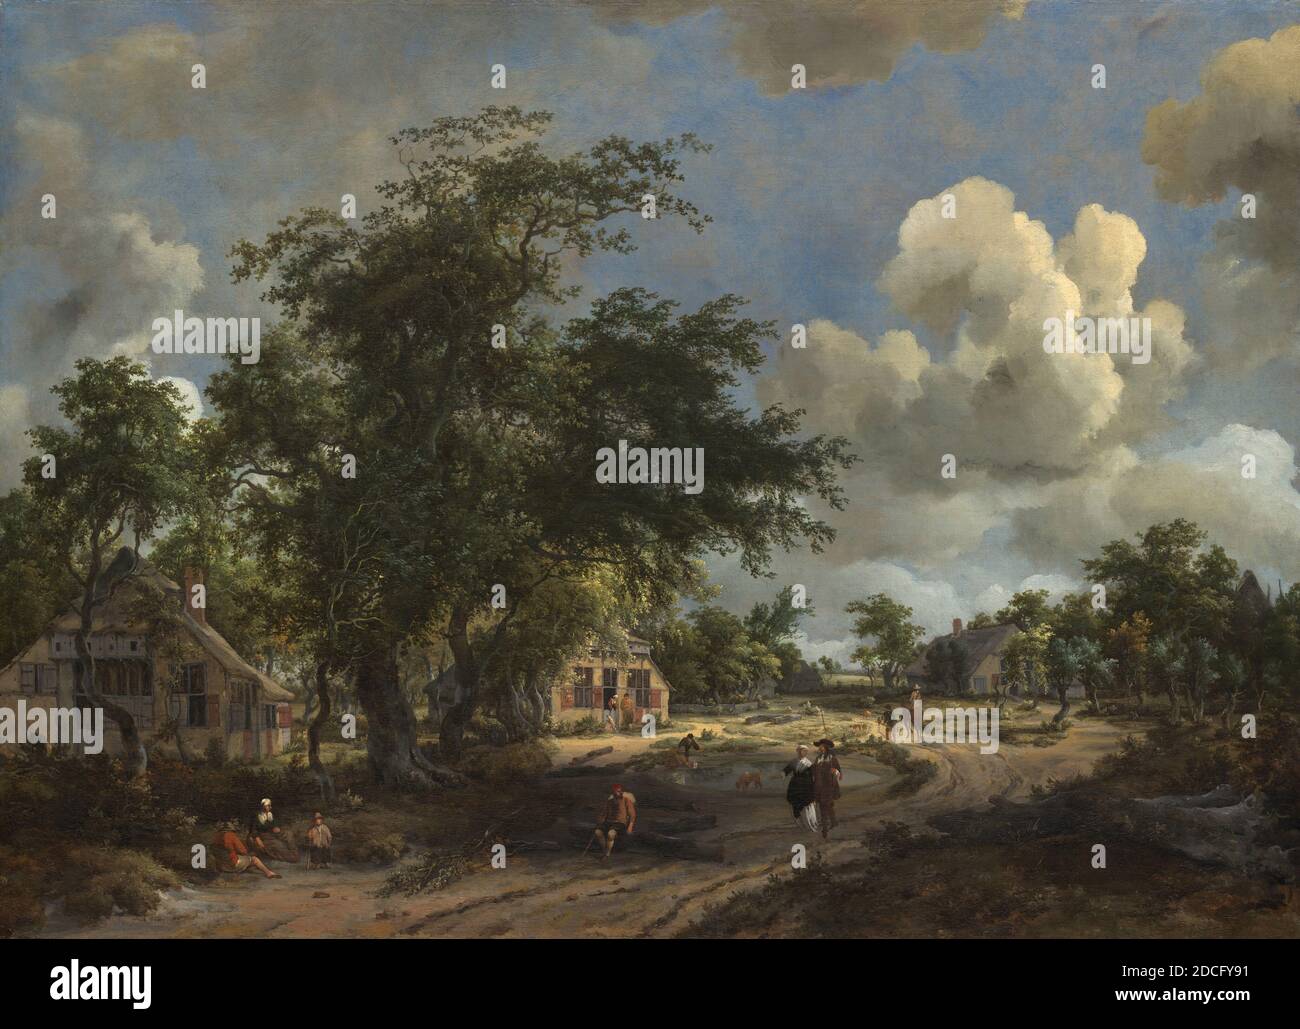 Meindert Hobbema, (artiste), néerlandais, 1638 - 1709, UNE vue sur une route de haut niveau, 1665, huile sur toile, total: 93.1 x 127.8 cm (36 5/8 x 50 5/16 in.), encadré: 122.6 x 158.4 cm (48 1/4 x 62 3/8 po), Meindert Hobbema a étudié sous le nom de l'artiste de paysage Jacob van Ruisdael, et quelques-unes de ses compositions ont évolué de l'œuvre de son maître d'époque. Hobbema s'est approché de la nature de manière directe, représentant des paysages pittoresques et ruraux, enlivenés par la présence de paysans ou de chasseurs. Il réutilise souvent des motifs favoris tels que de vieilles moulins à eau, des chalets au toit de chaume et des digues à motif embanké Banque D'Images